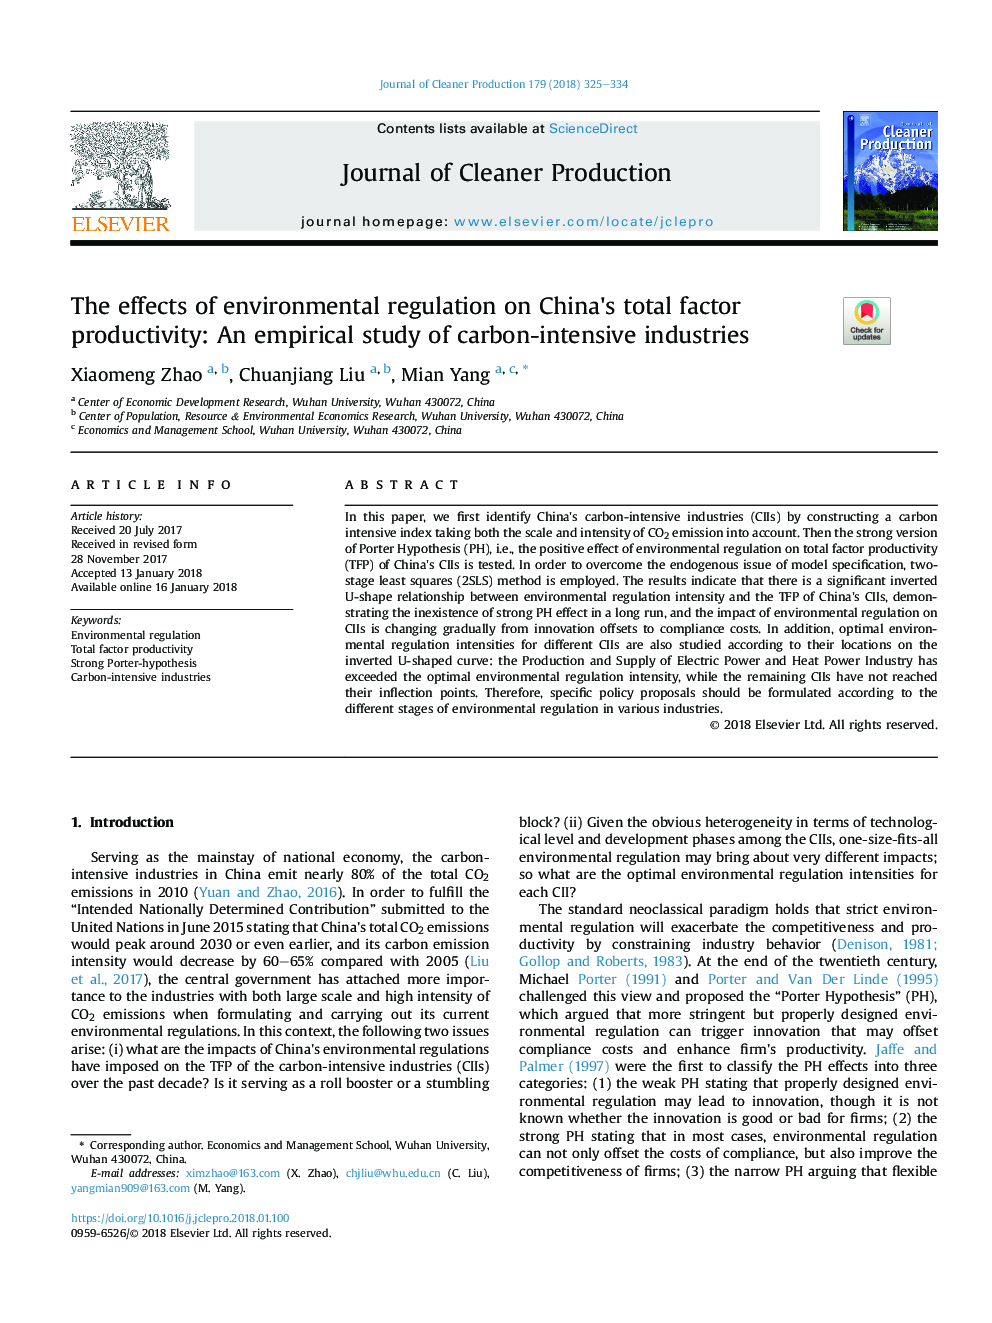 اثرات مقررات زیست محیطی بر بهره وری کل عوامل چین: یک مطالعه تجربی از صنایع پر مصرف کربن 